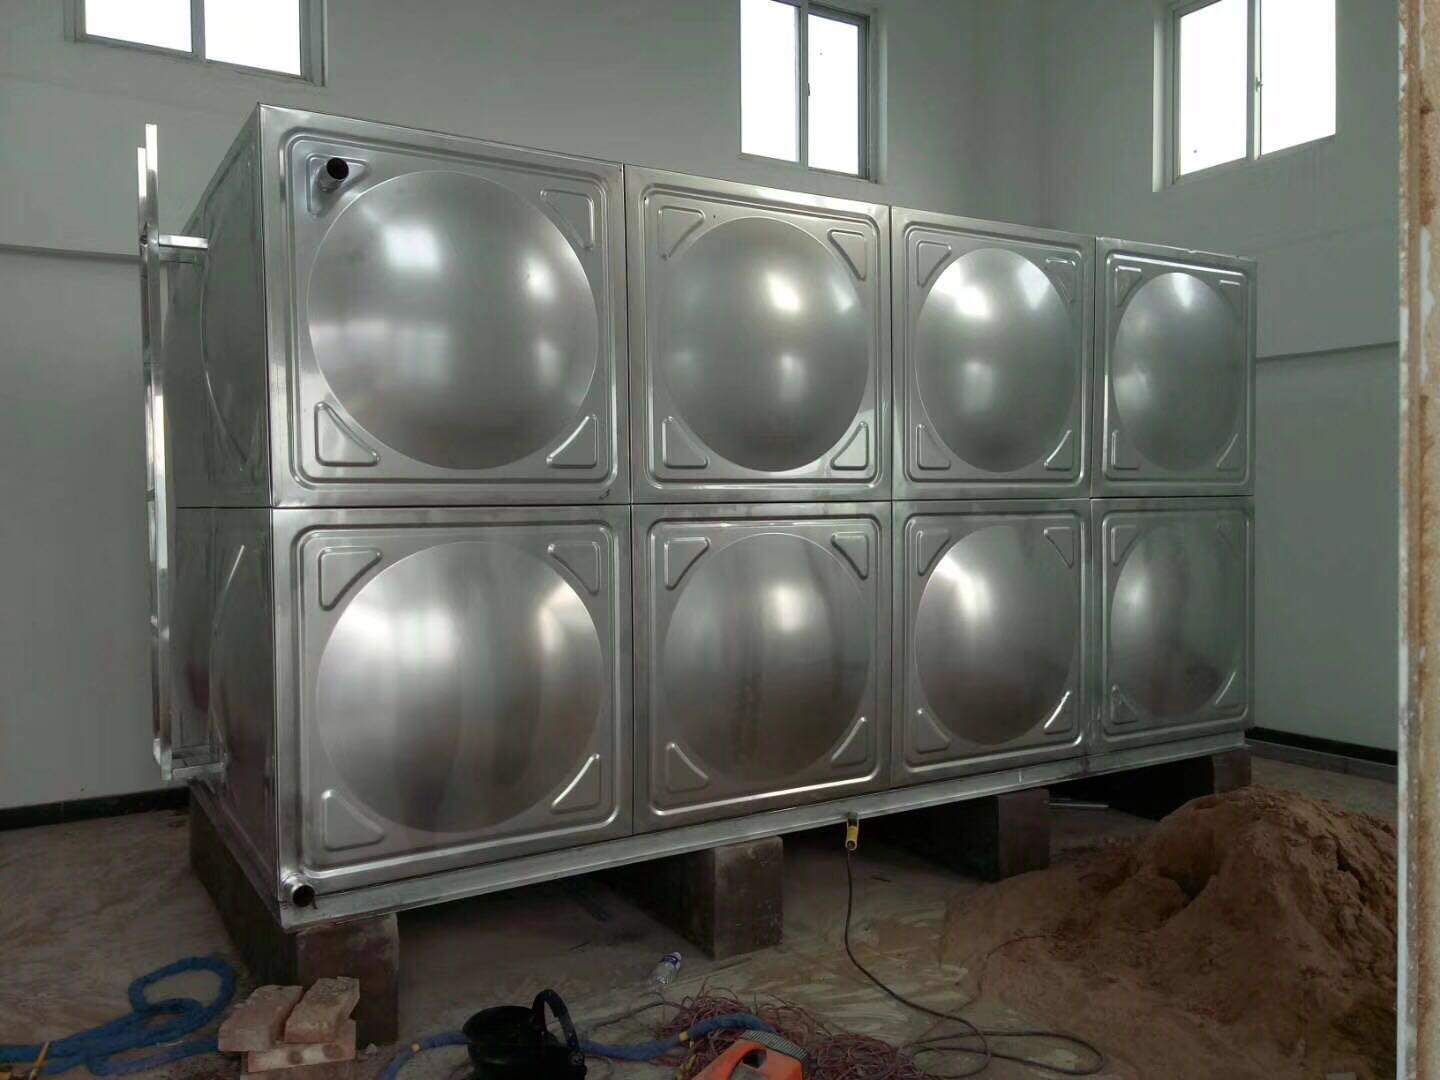 广西梧州不锈钢消防水箱厂家 圆形水箱 卧式水箱价格 立式水箱描述 方形水箱 冷水箱 保温水箱 生活储水箱